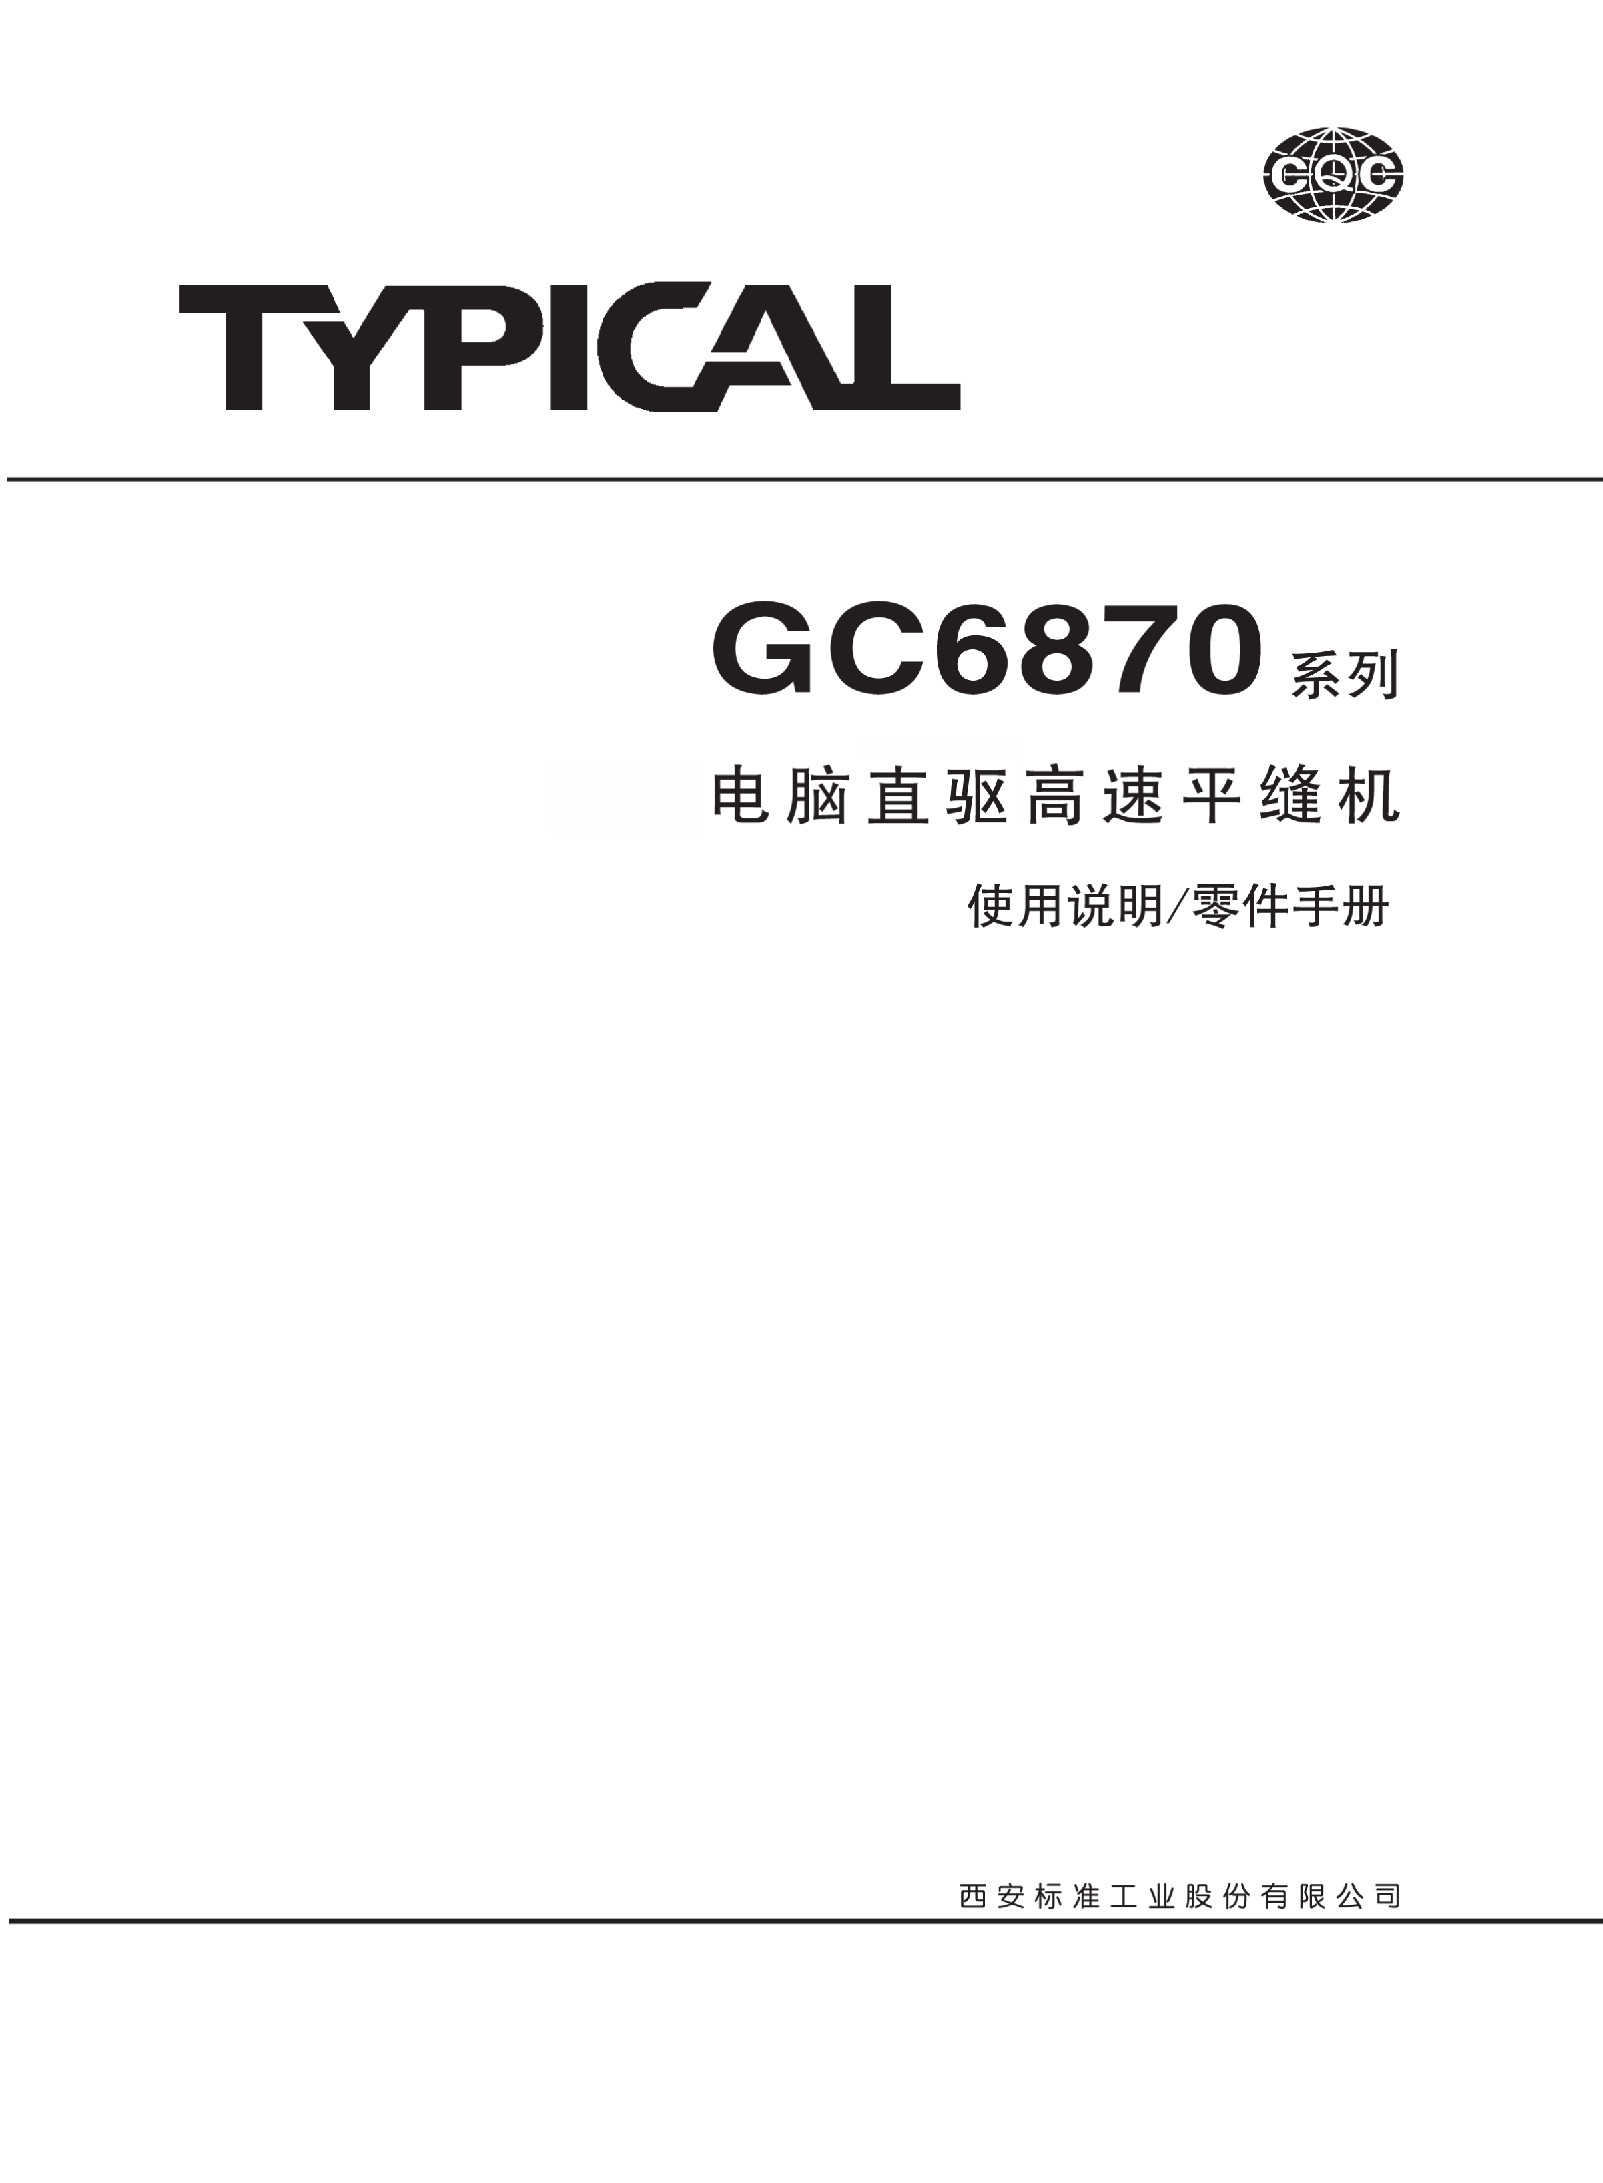 标准 Typical GC6870 使用说明书 封面